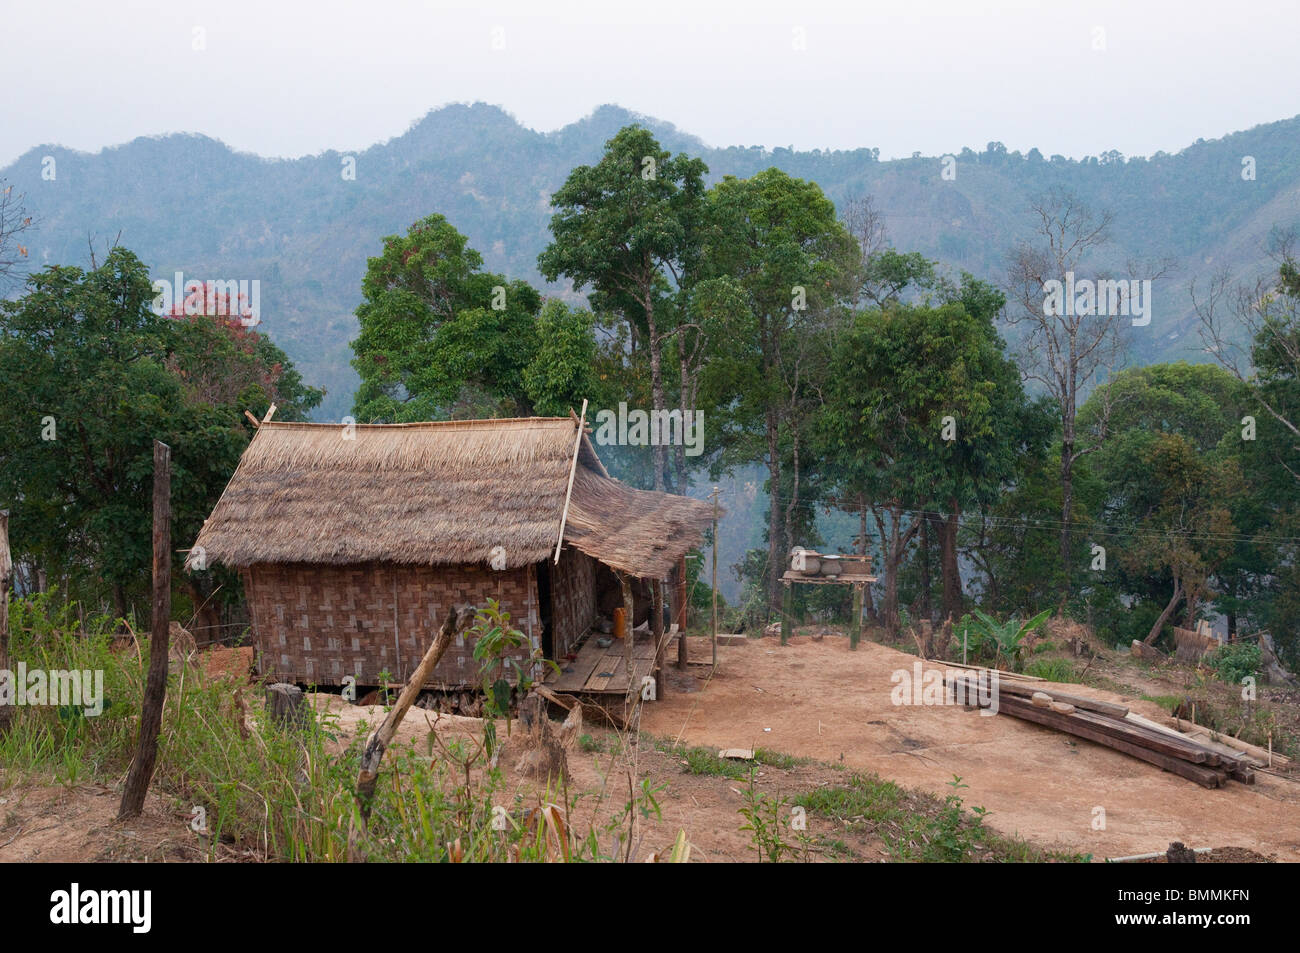 Myanmar House Burma Village Stock Photos & Myanmar House ...